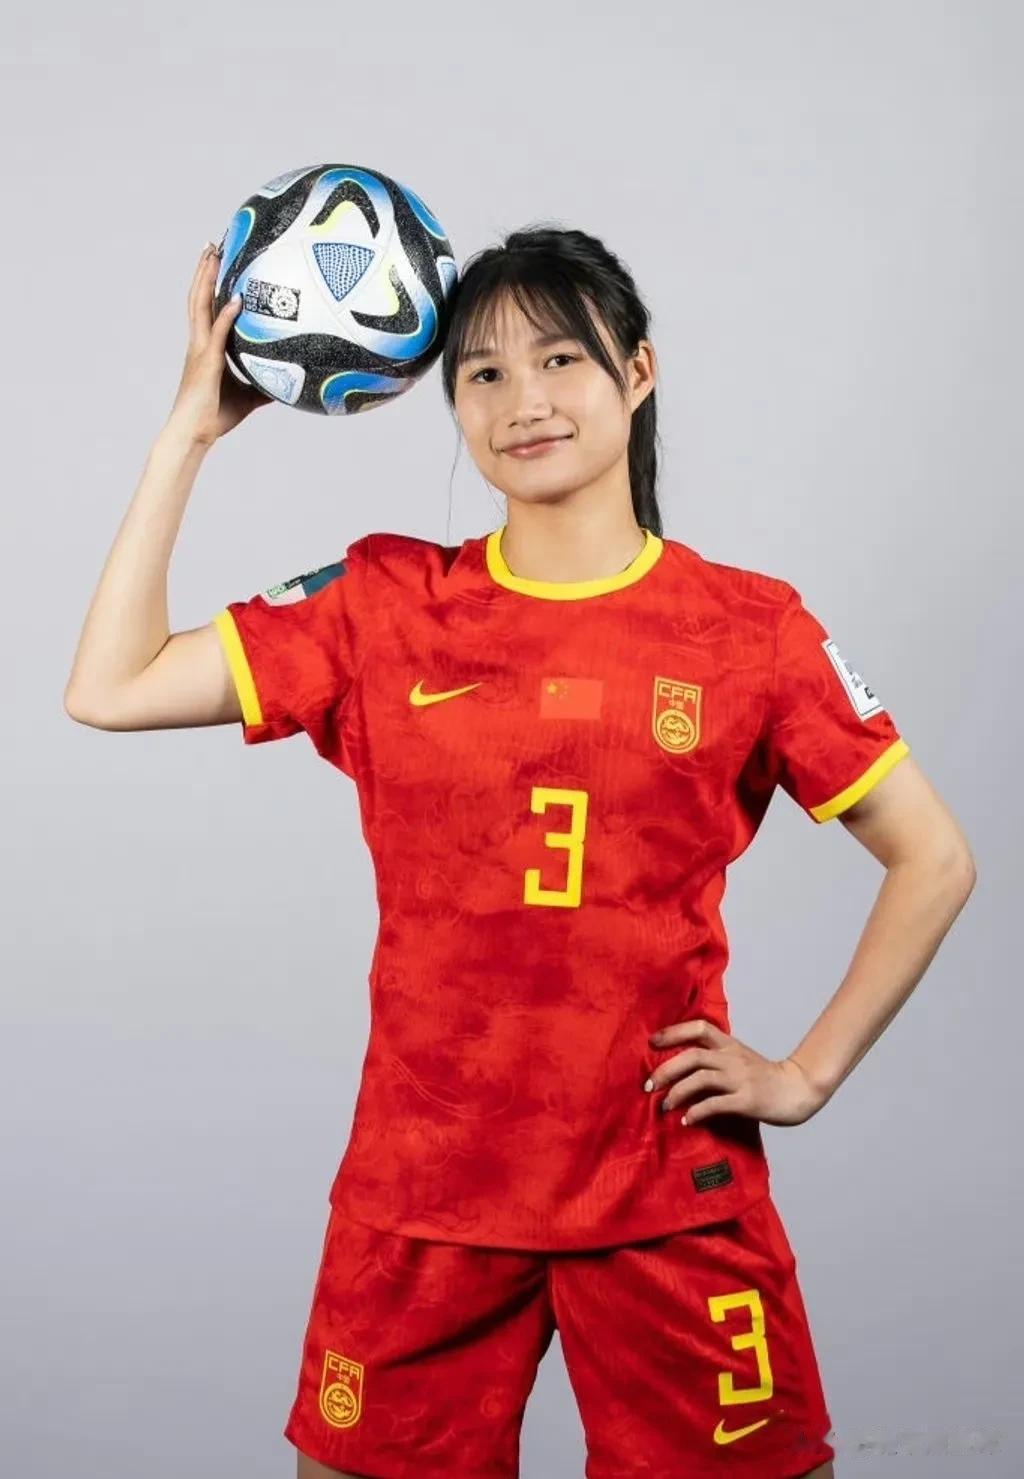 插播一条足球，给中国姑娘加油！祝中国姑娘22号世界杯首场凯旋！

分享一下姑娘们(1)